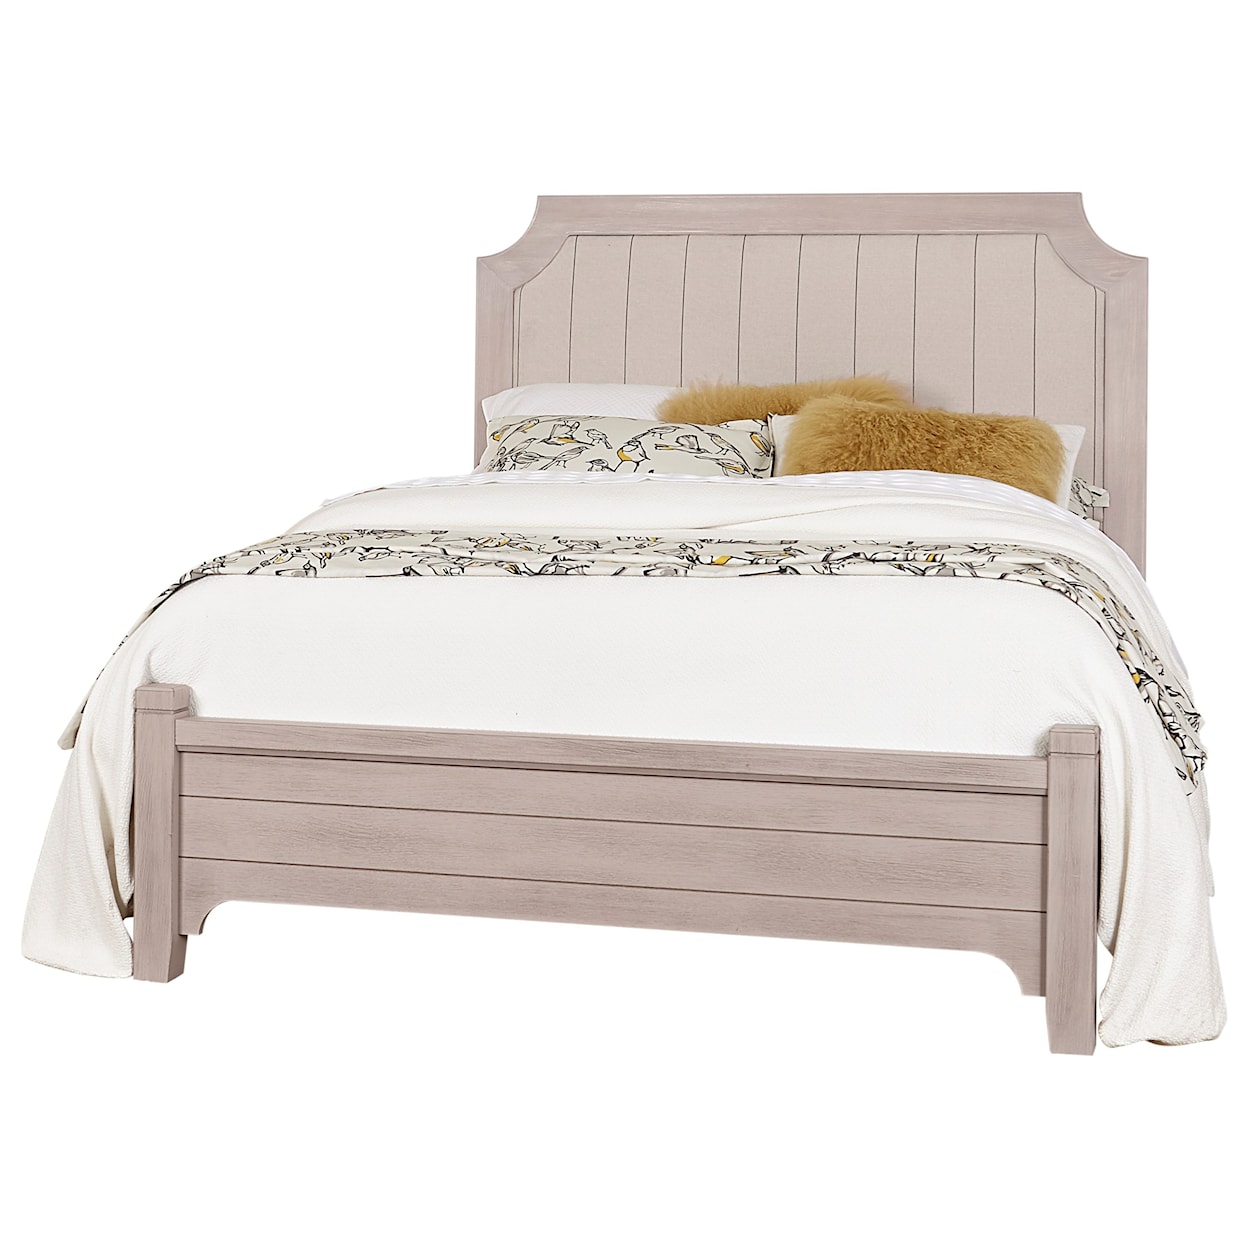 Vaughan-Bassett Bungalow King Upholstered Bed